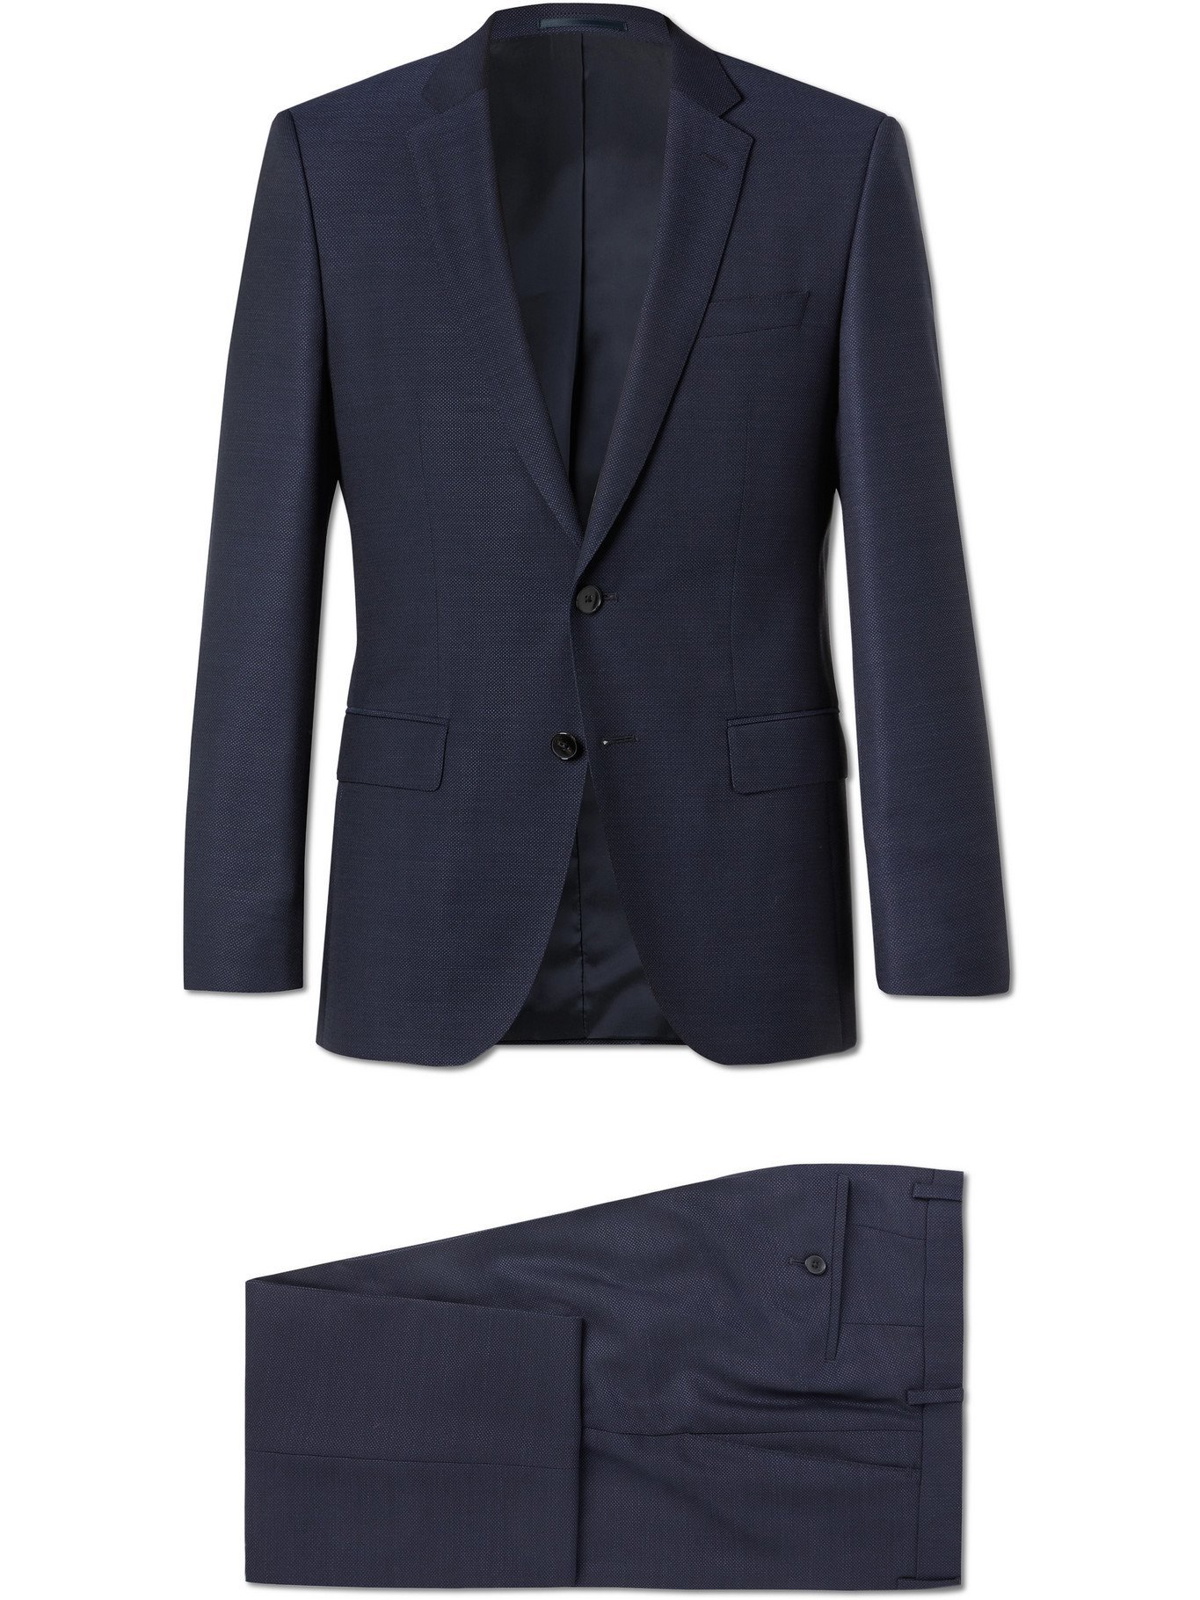 HUGO BOSS - Huge6/ Genius5 Slim-Fit Virgin Wool Suit - Blue - IT 52 ...